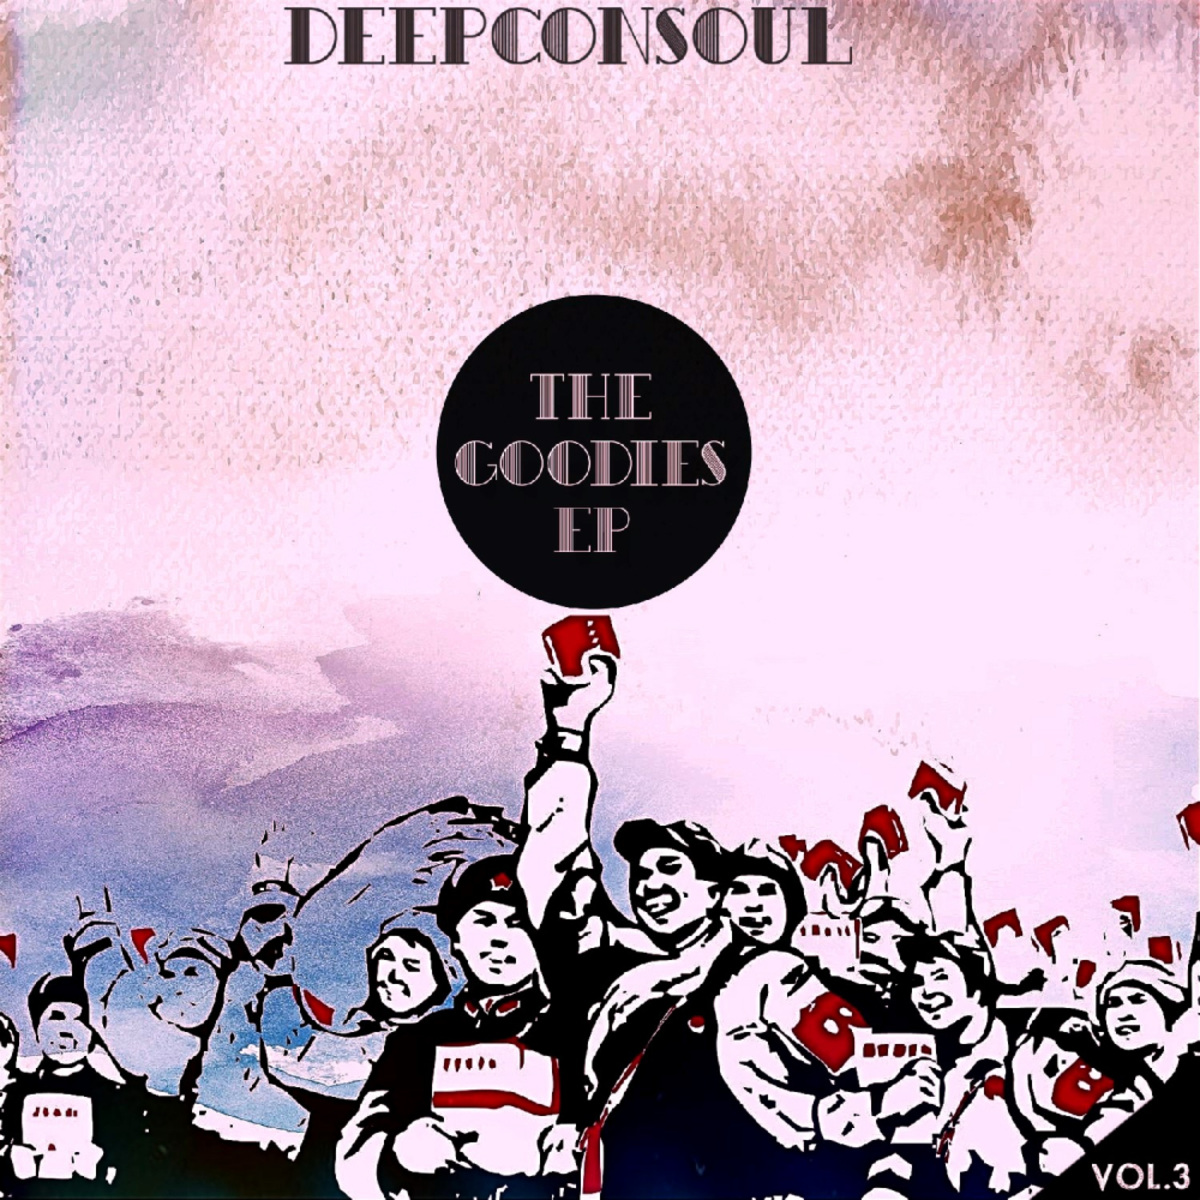 Deepconsoul - The Goodies, Vol. 3 / Deepconsoul Sounds